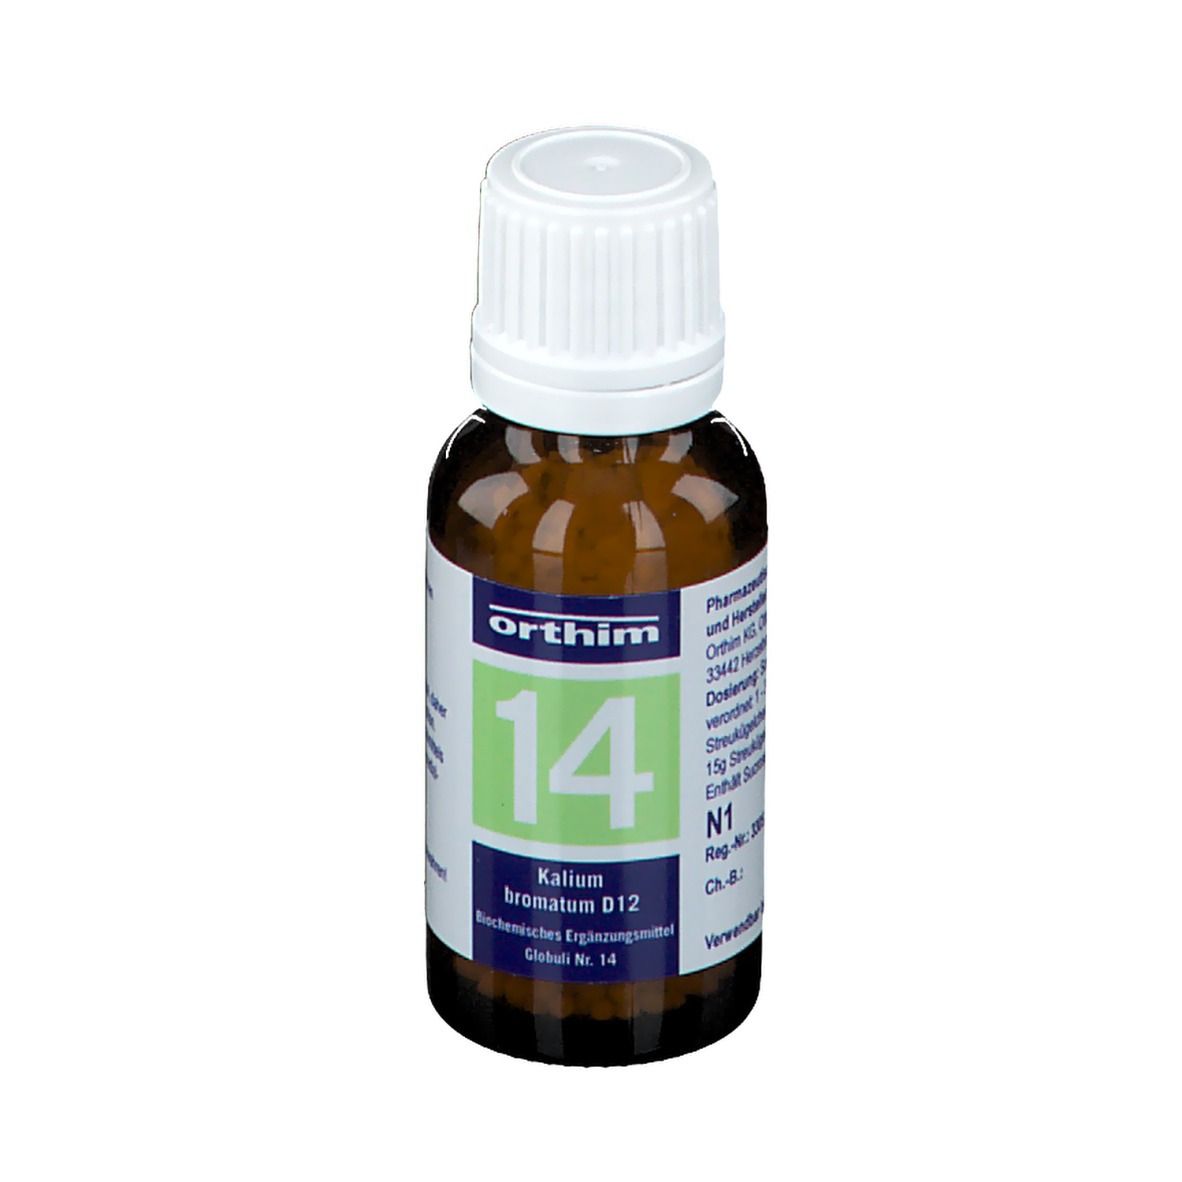 Biochemie orthim® Nr. 14 Kalium bromatum D12